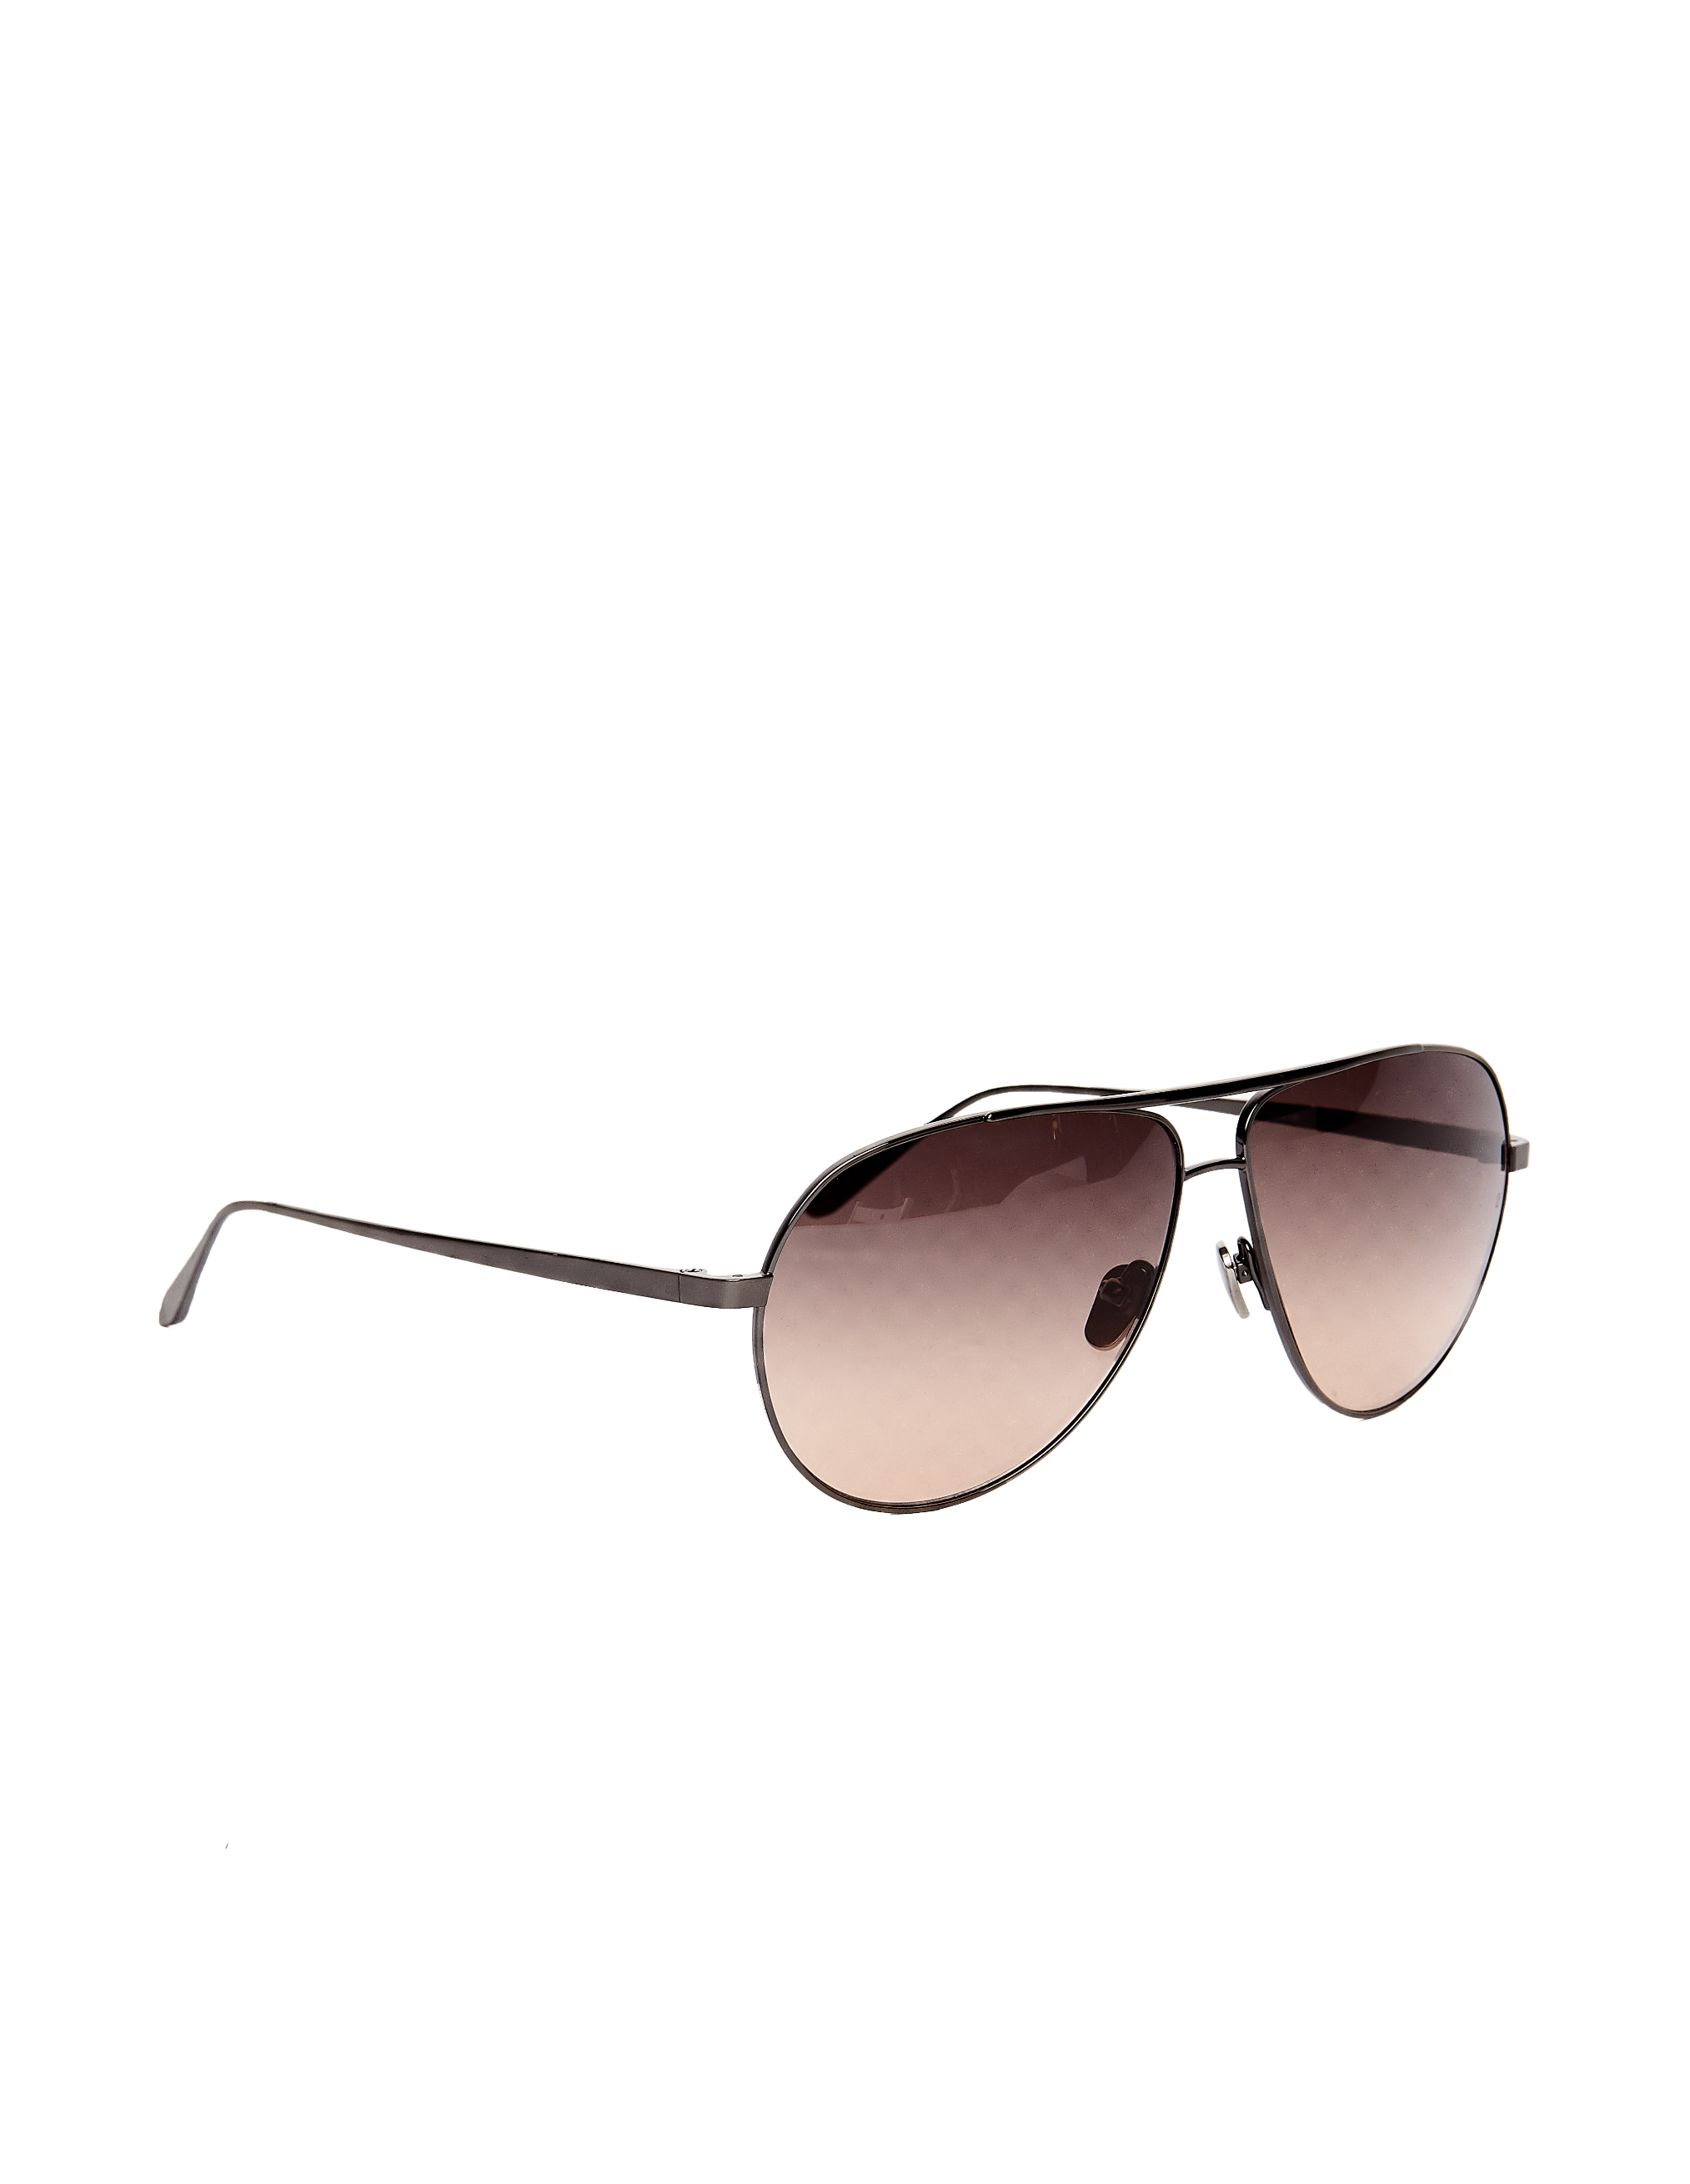 Солнцезащитные очки Luxe Linda Farrow LFL501C7SUN, размер sm